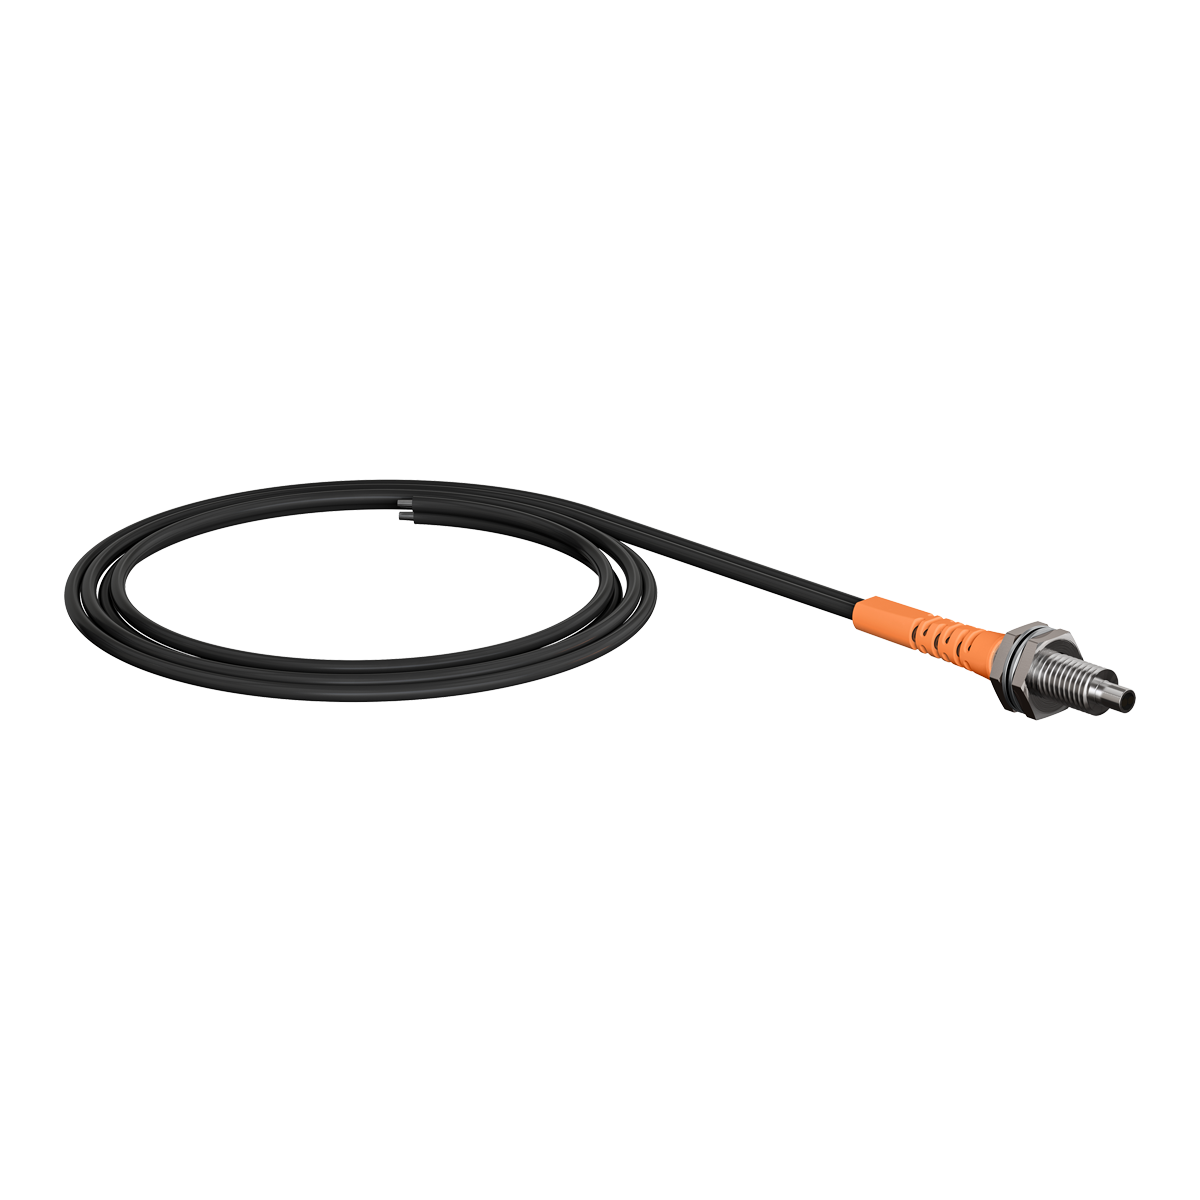 Оптоволоконные усилители KIPPRIBOR серии OF65 и кабели OF